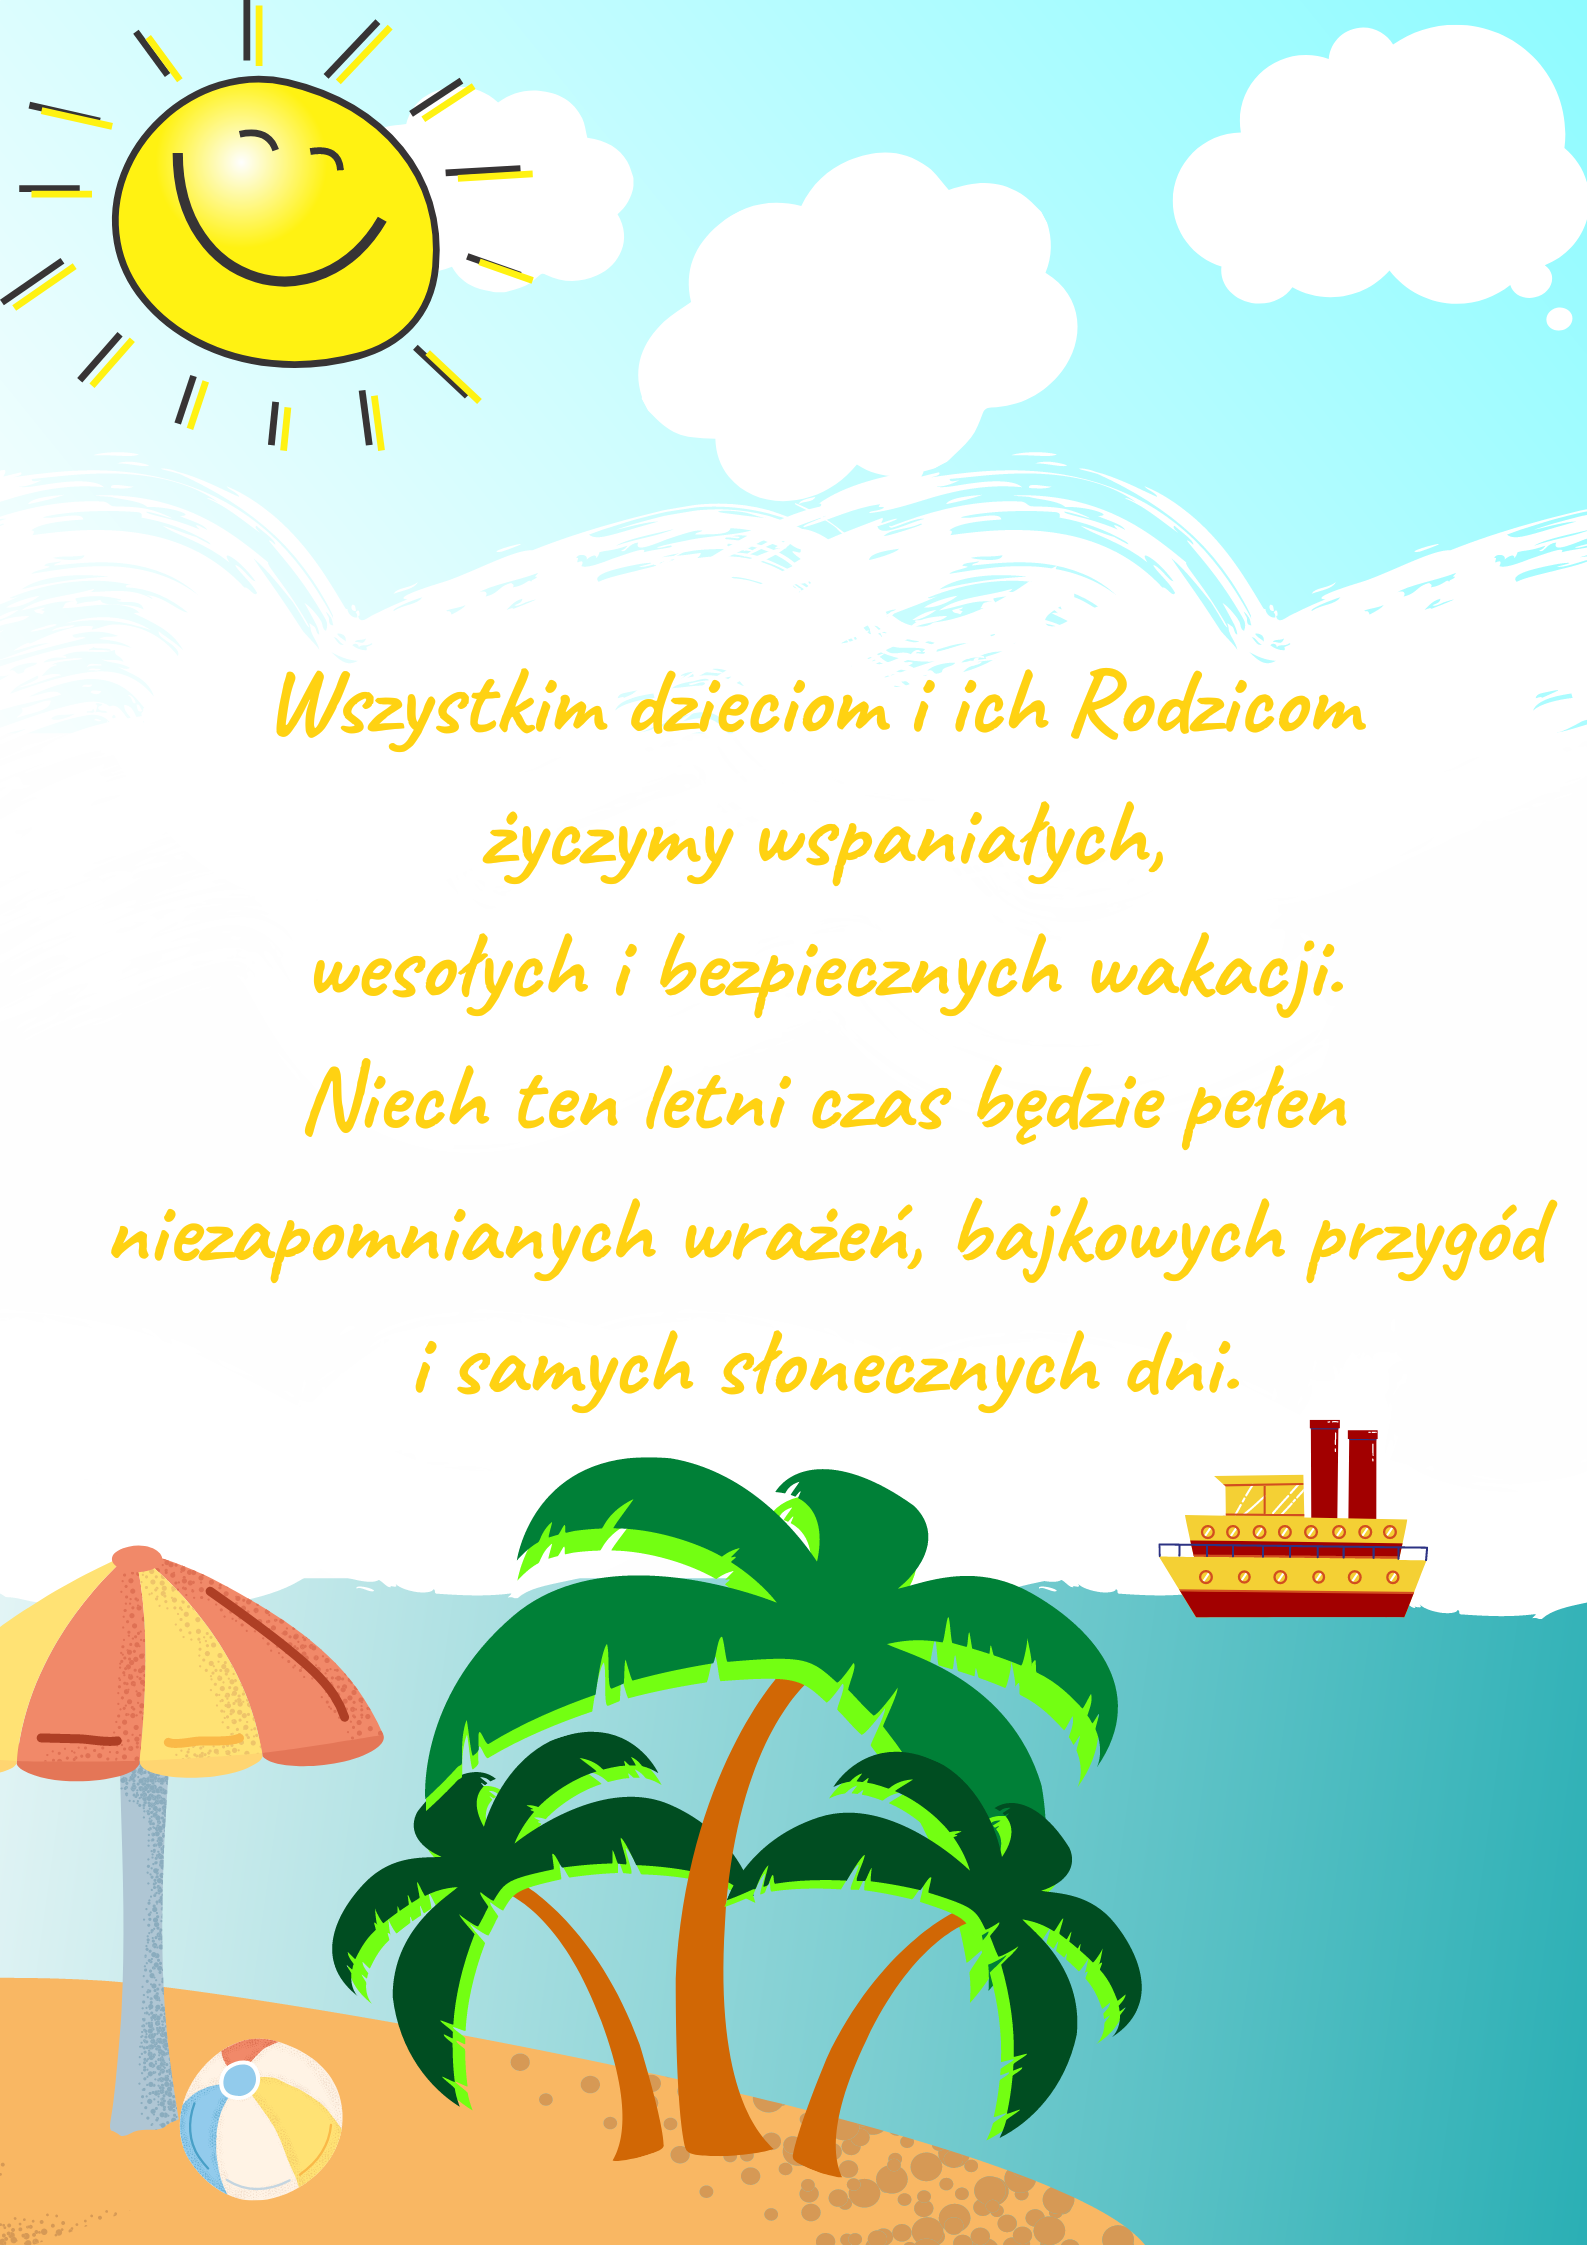 Kolorowy plakat z morzem, słońcem, chmurkami, palmami i życzeniami udanych i spokojnych wakacji